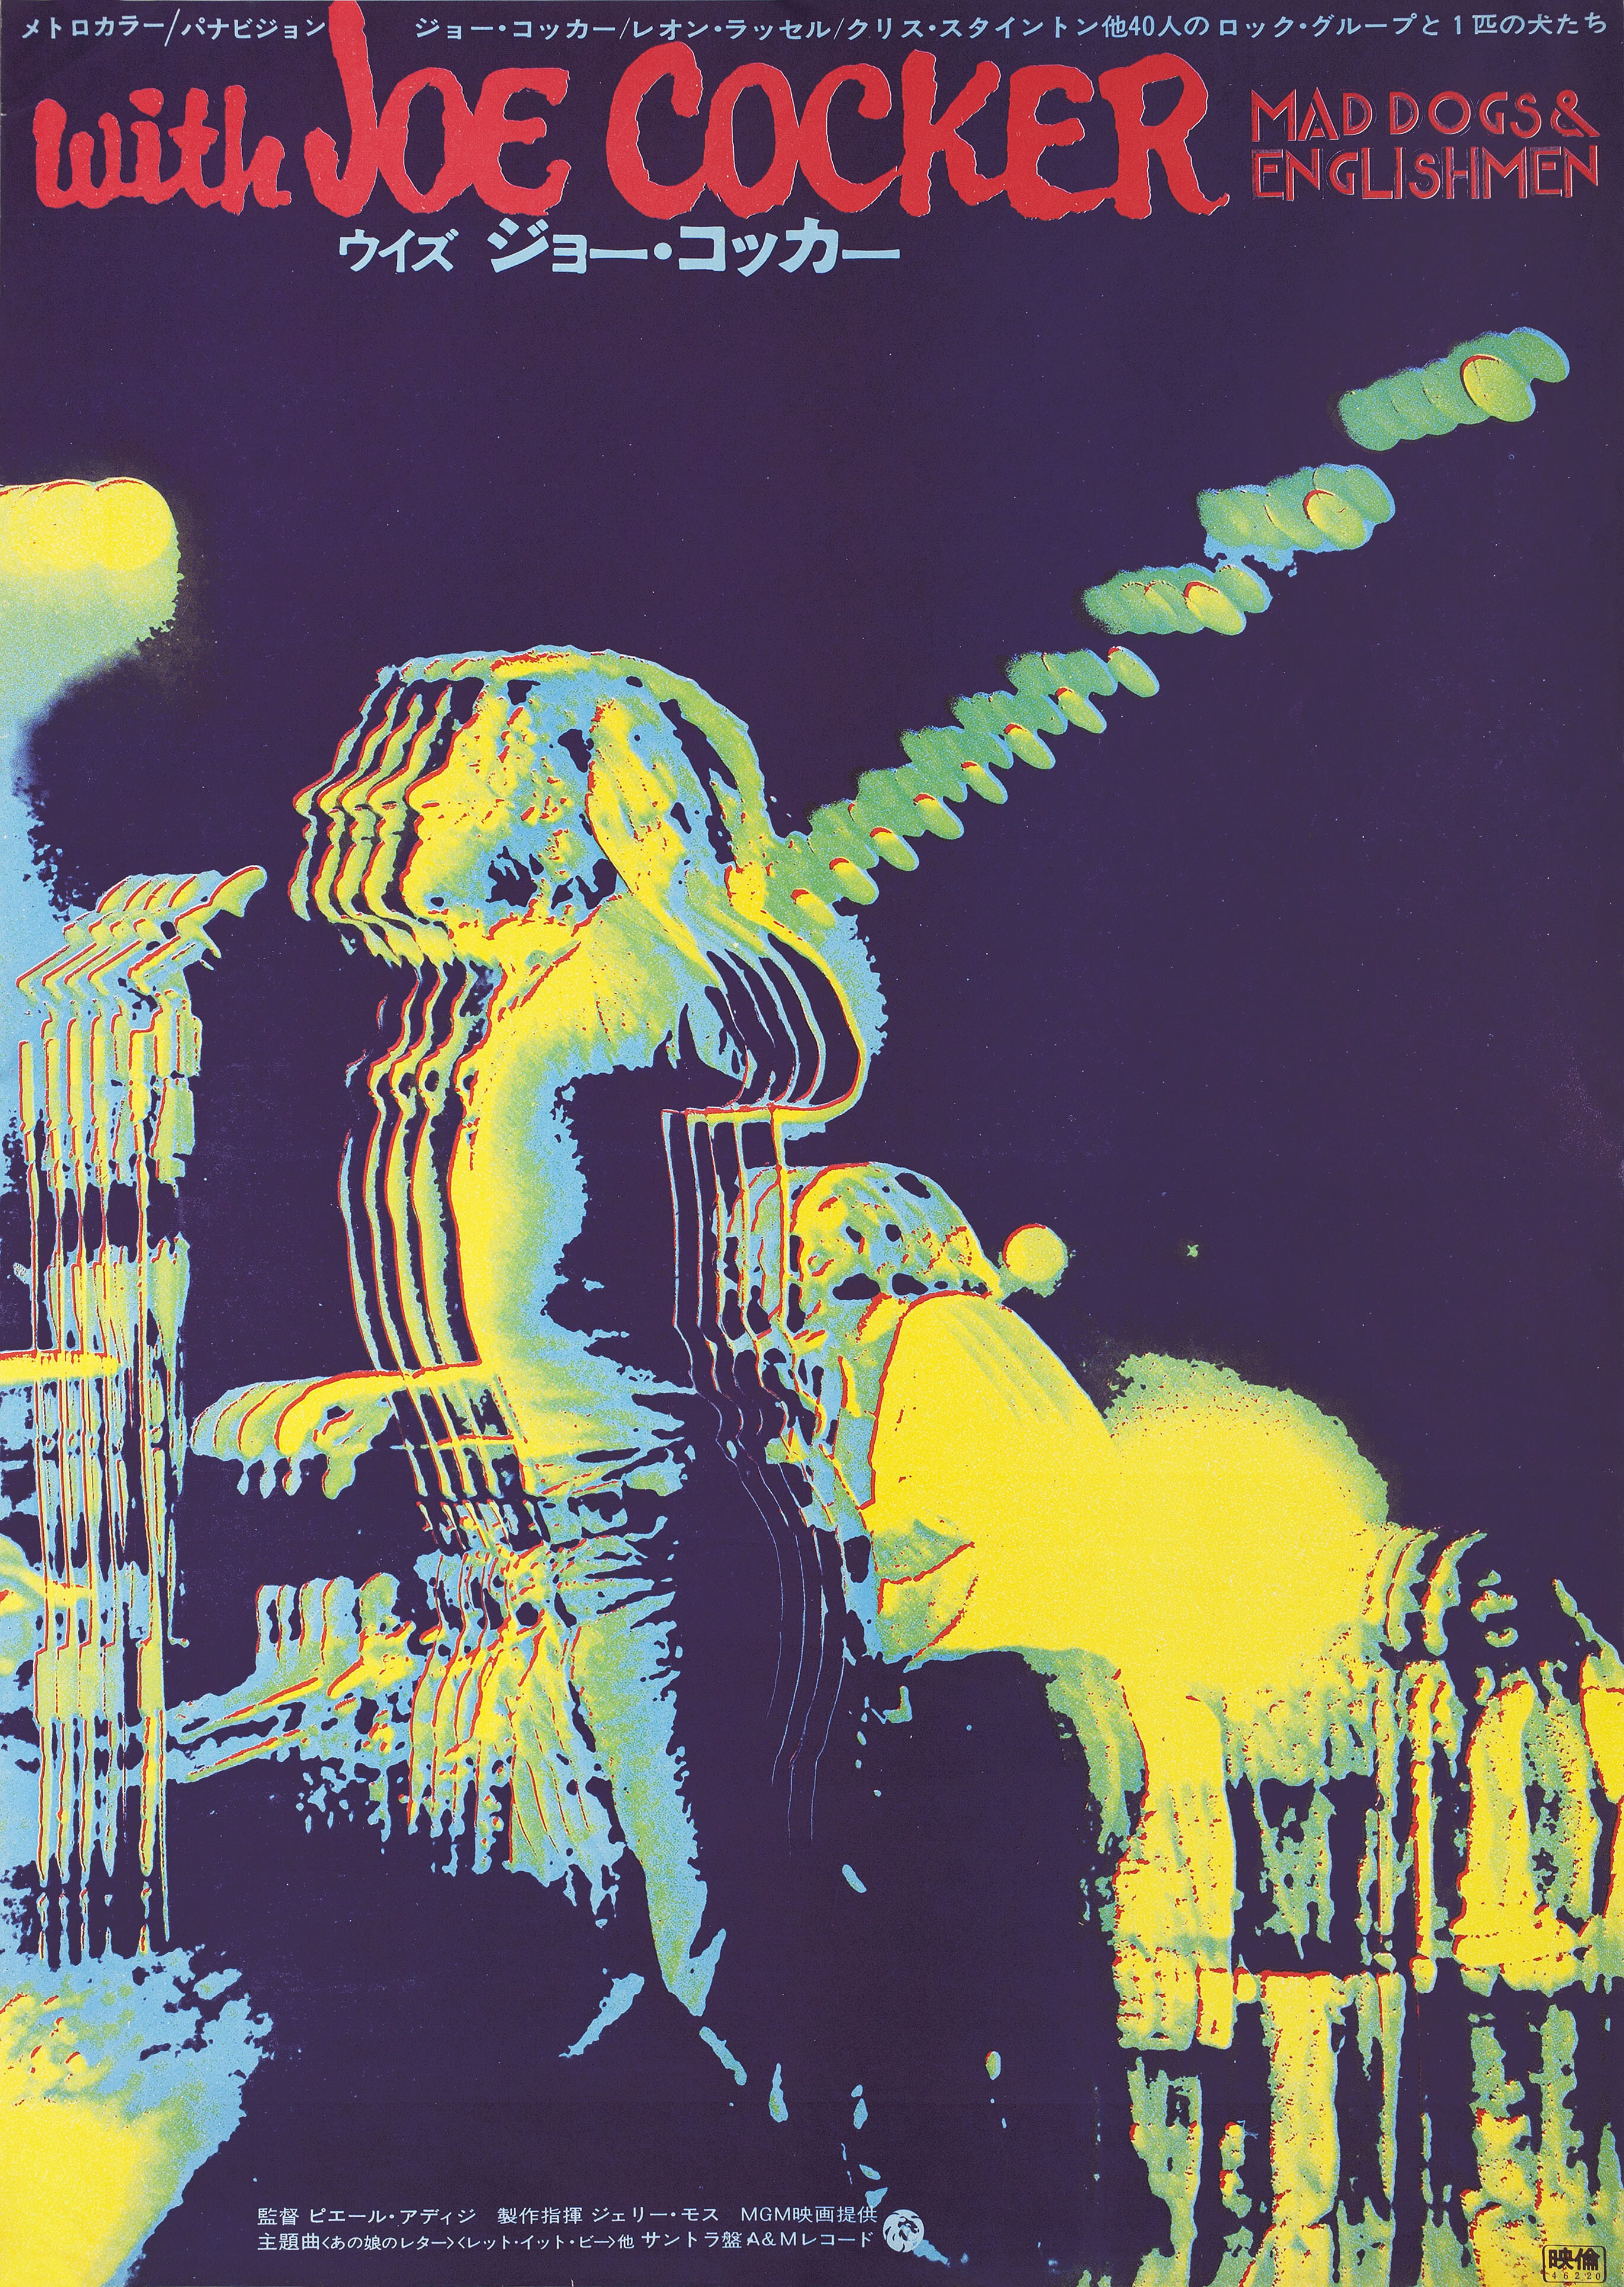 Бешеные псы и англичане (Mad Dogs & Englishmen, 1971), режиссёр Пьер Адидж, японский постер к фильму (психоделическое искусство, 1971 год)